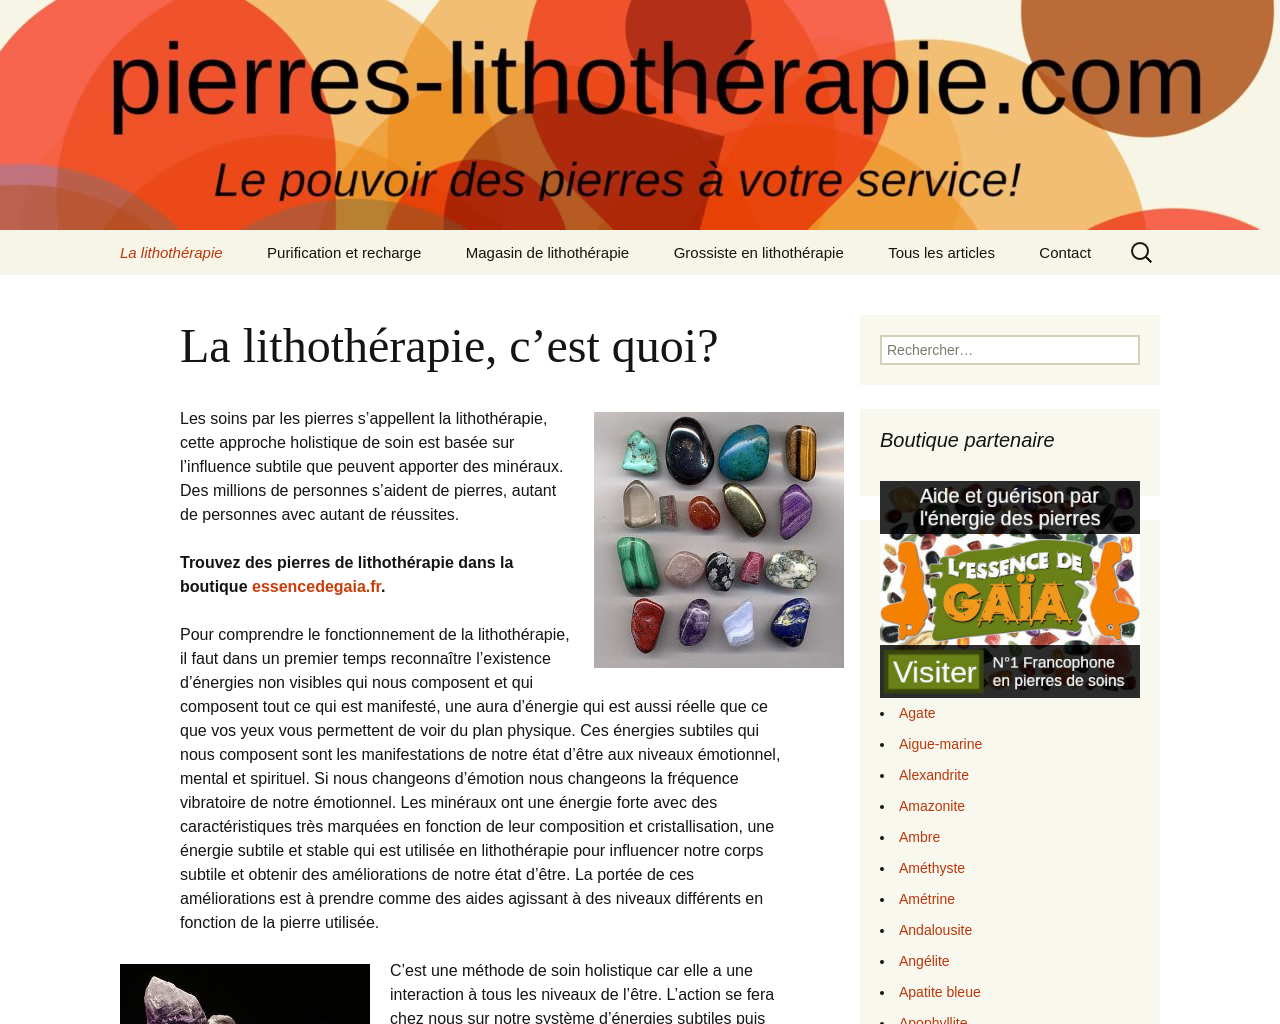 www.pierres-lithotherapie.com